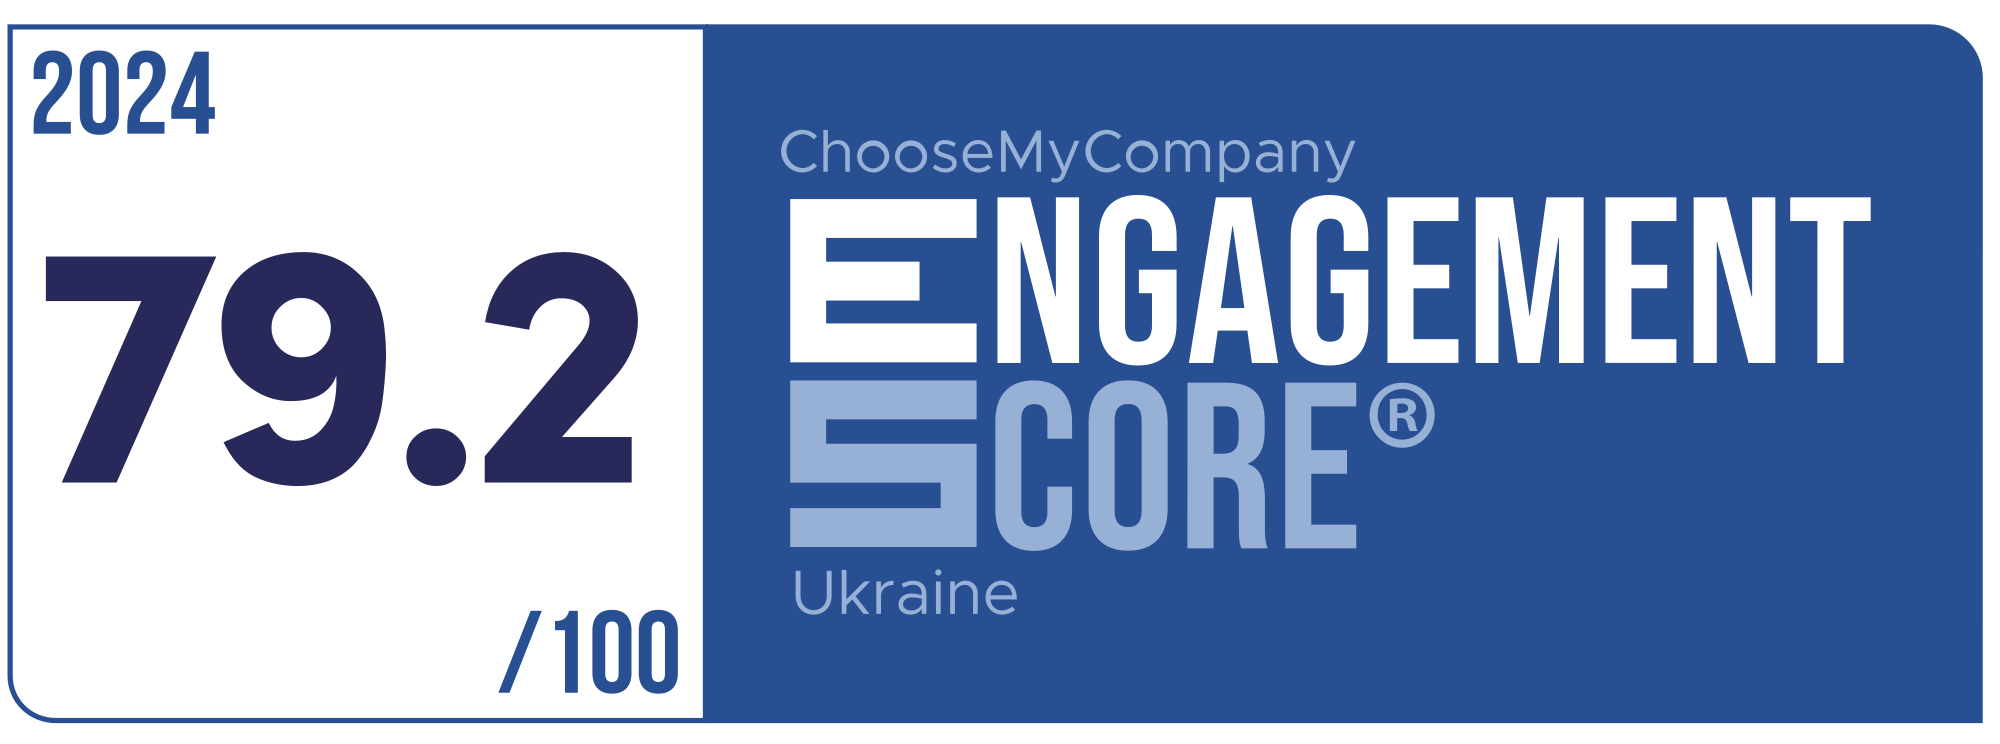 Label Engagement Score 2024 Ukraine